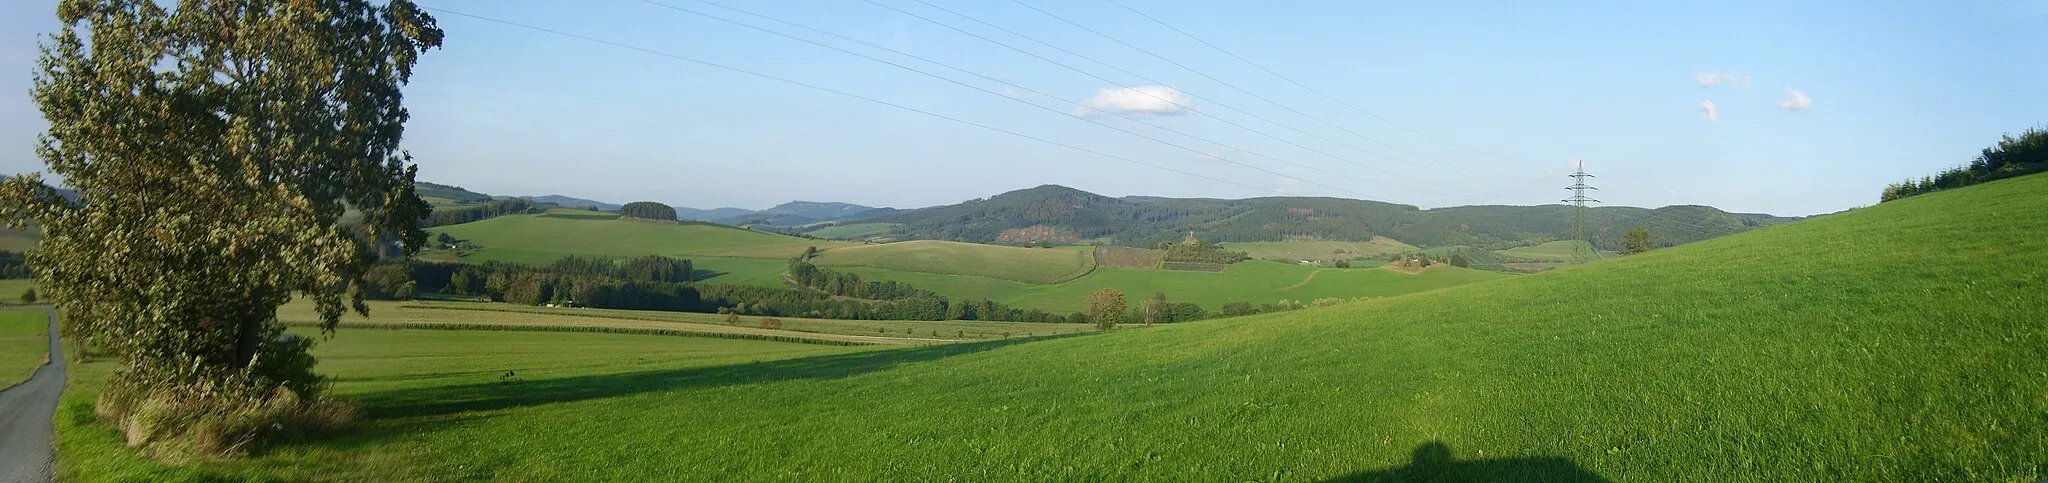 Photo showing: Blick vom Südostrand der Bödefelder Mulde oberhalb Altenfelds auf den Kahlenberg (732,8 m; 4 km entfernt), dem Nordgipfel des Rückens der Nordhelle (792,6 m); knapp verdeckt ist rechts der Zwischengipfel Hoher Hagen (729,6 m). Links davon der Istenberg (728 m; 10,6 km) mit dem Feldstein (756 m; 10,4 km) links. Weiter links und teils verdeckt der Heidkopf (715,3 m; 10,2 km). Zwischen Aufnahmeort und den Bergen liegt das Tal der Neger.

– siehe Udeuschle